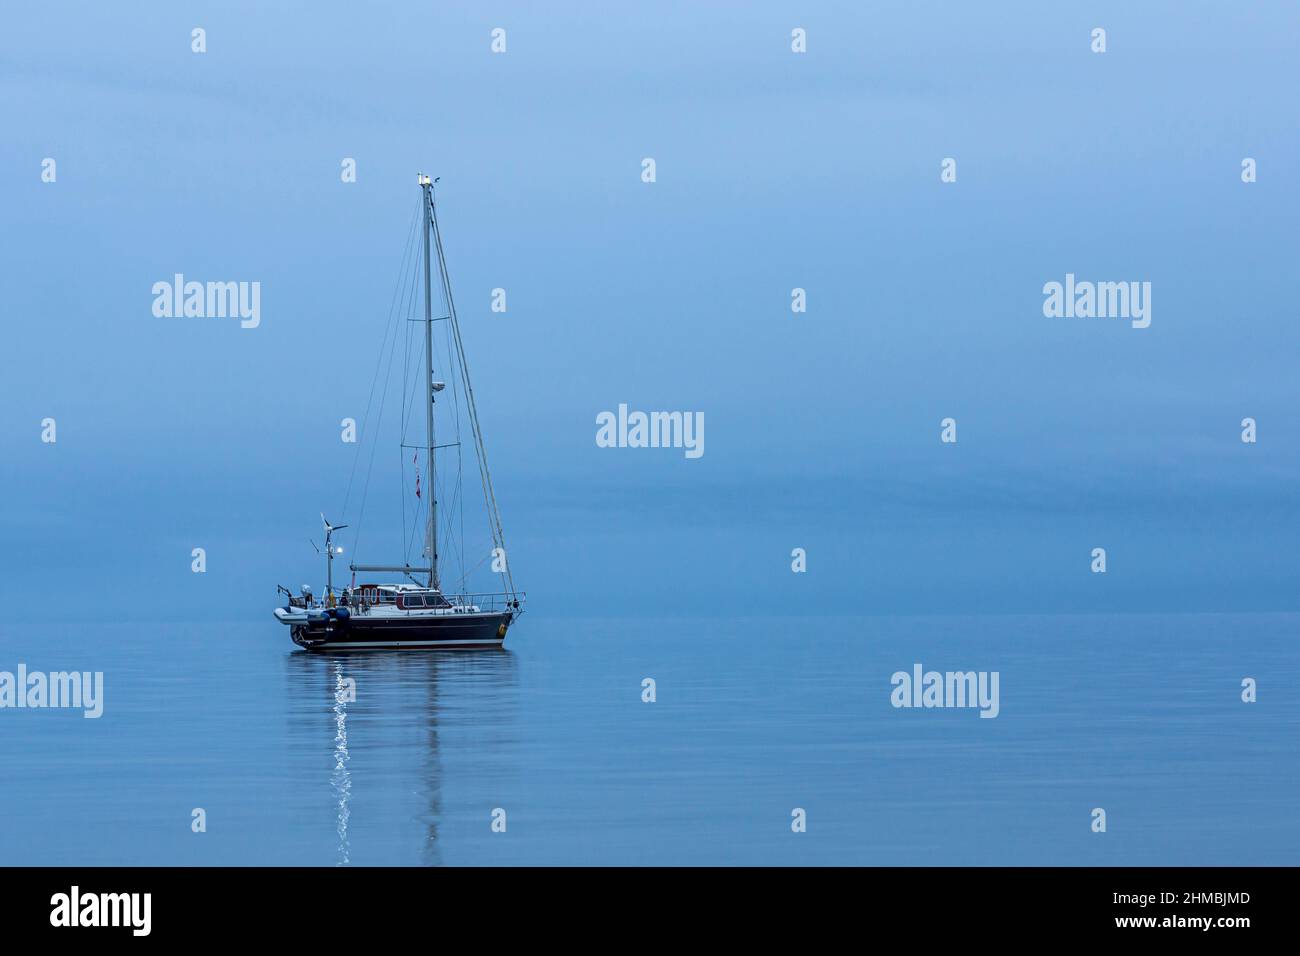 La barca a vela nera è sola, riflettendo nel mare calmo durante l'ora blu, Danimarca, 30 agosto 2017 Foto Stock